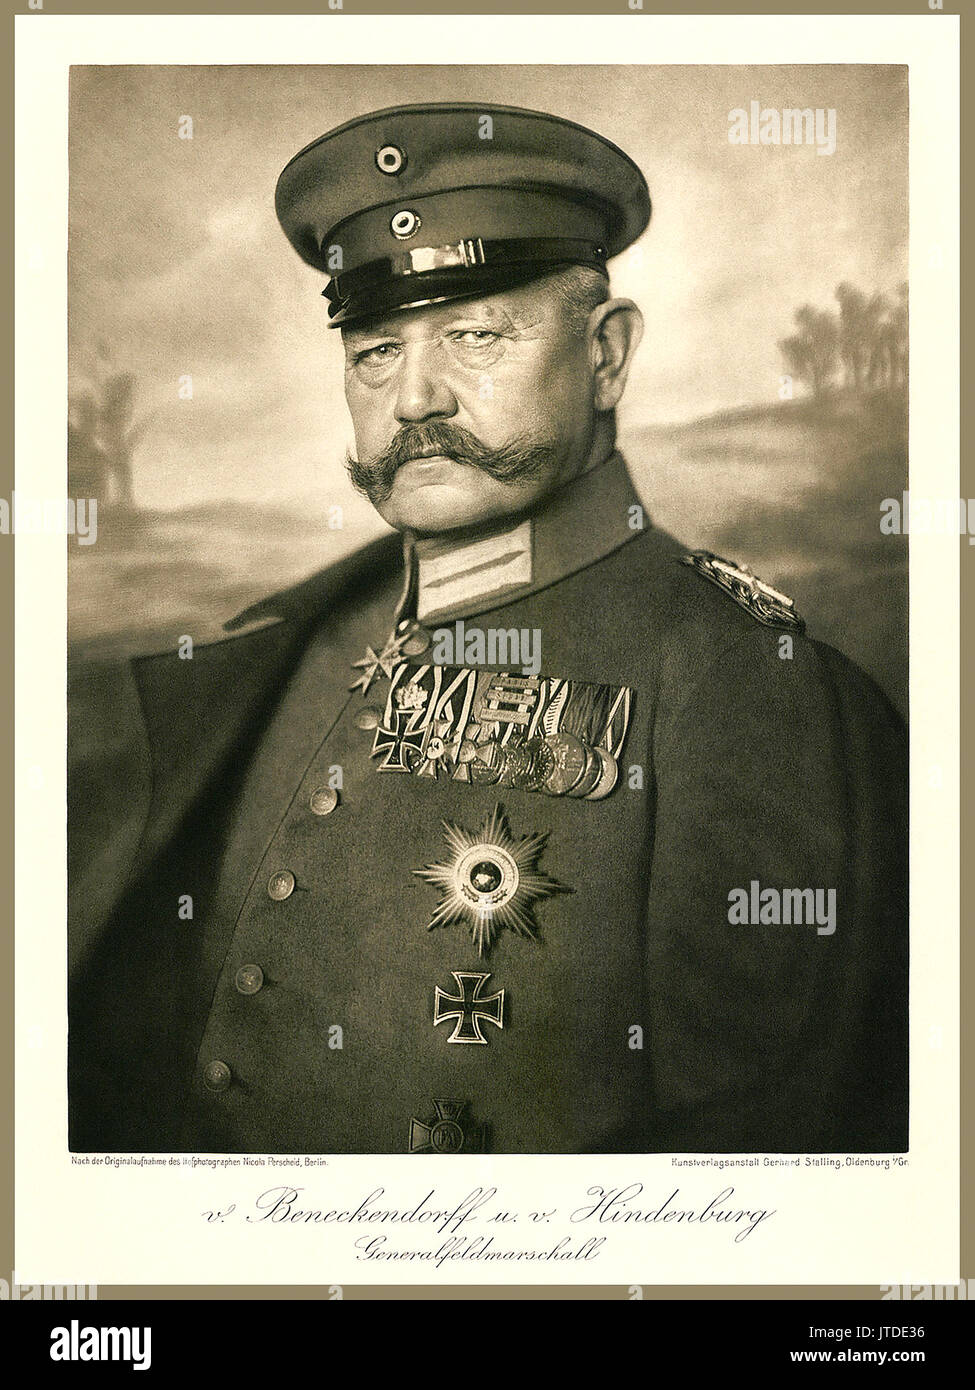 Von Hindenburg diario studio retrato Ludwig Hans Anton von Beneckendorff und von Hindenburg 2do Presidente del Reich alemán de la República de Weimar, logrado por Adolf Hitler Foto de stock